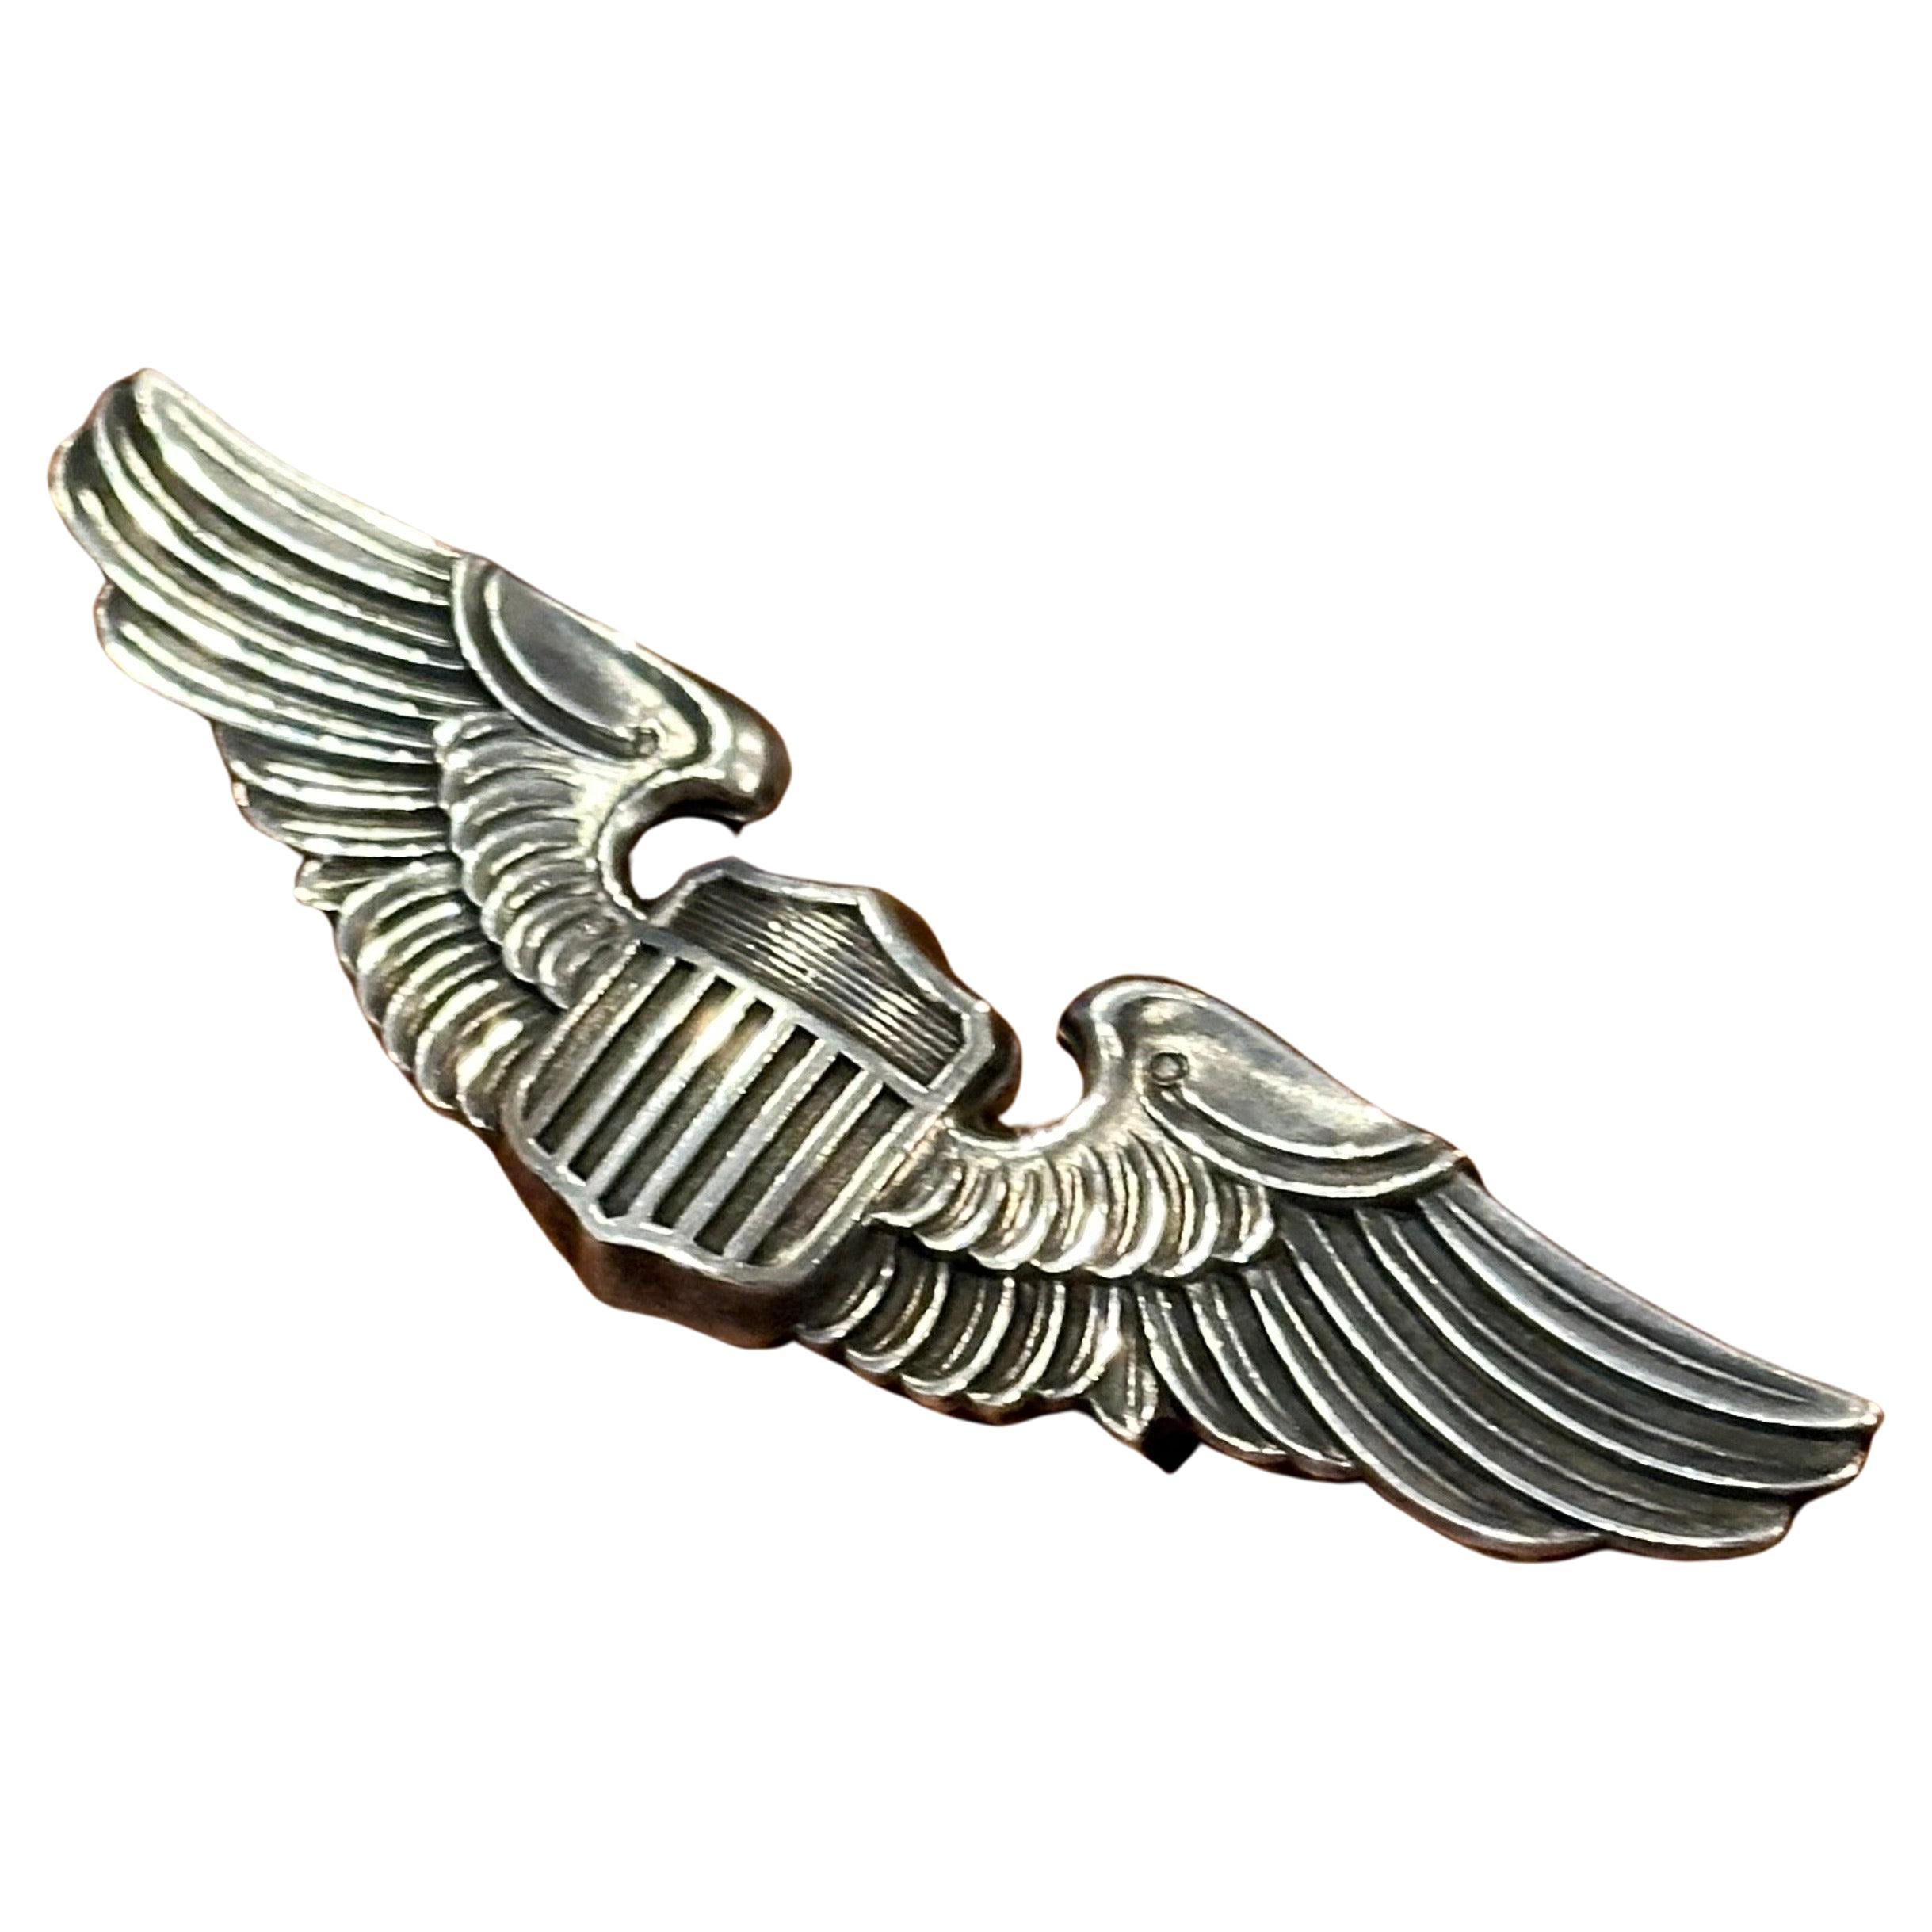 Eine sehr schöne Mitte des Jahrhunderts U.S. Air Force Sterling Silber Pilot Air Wings Shirt Pin, circa 1940er Jahre. Das Stück ist in sehr gutem Vintage-Zustand mit einer schönen Patina und misst 3 